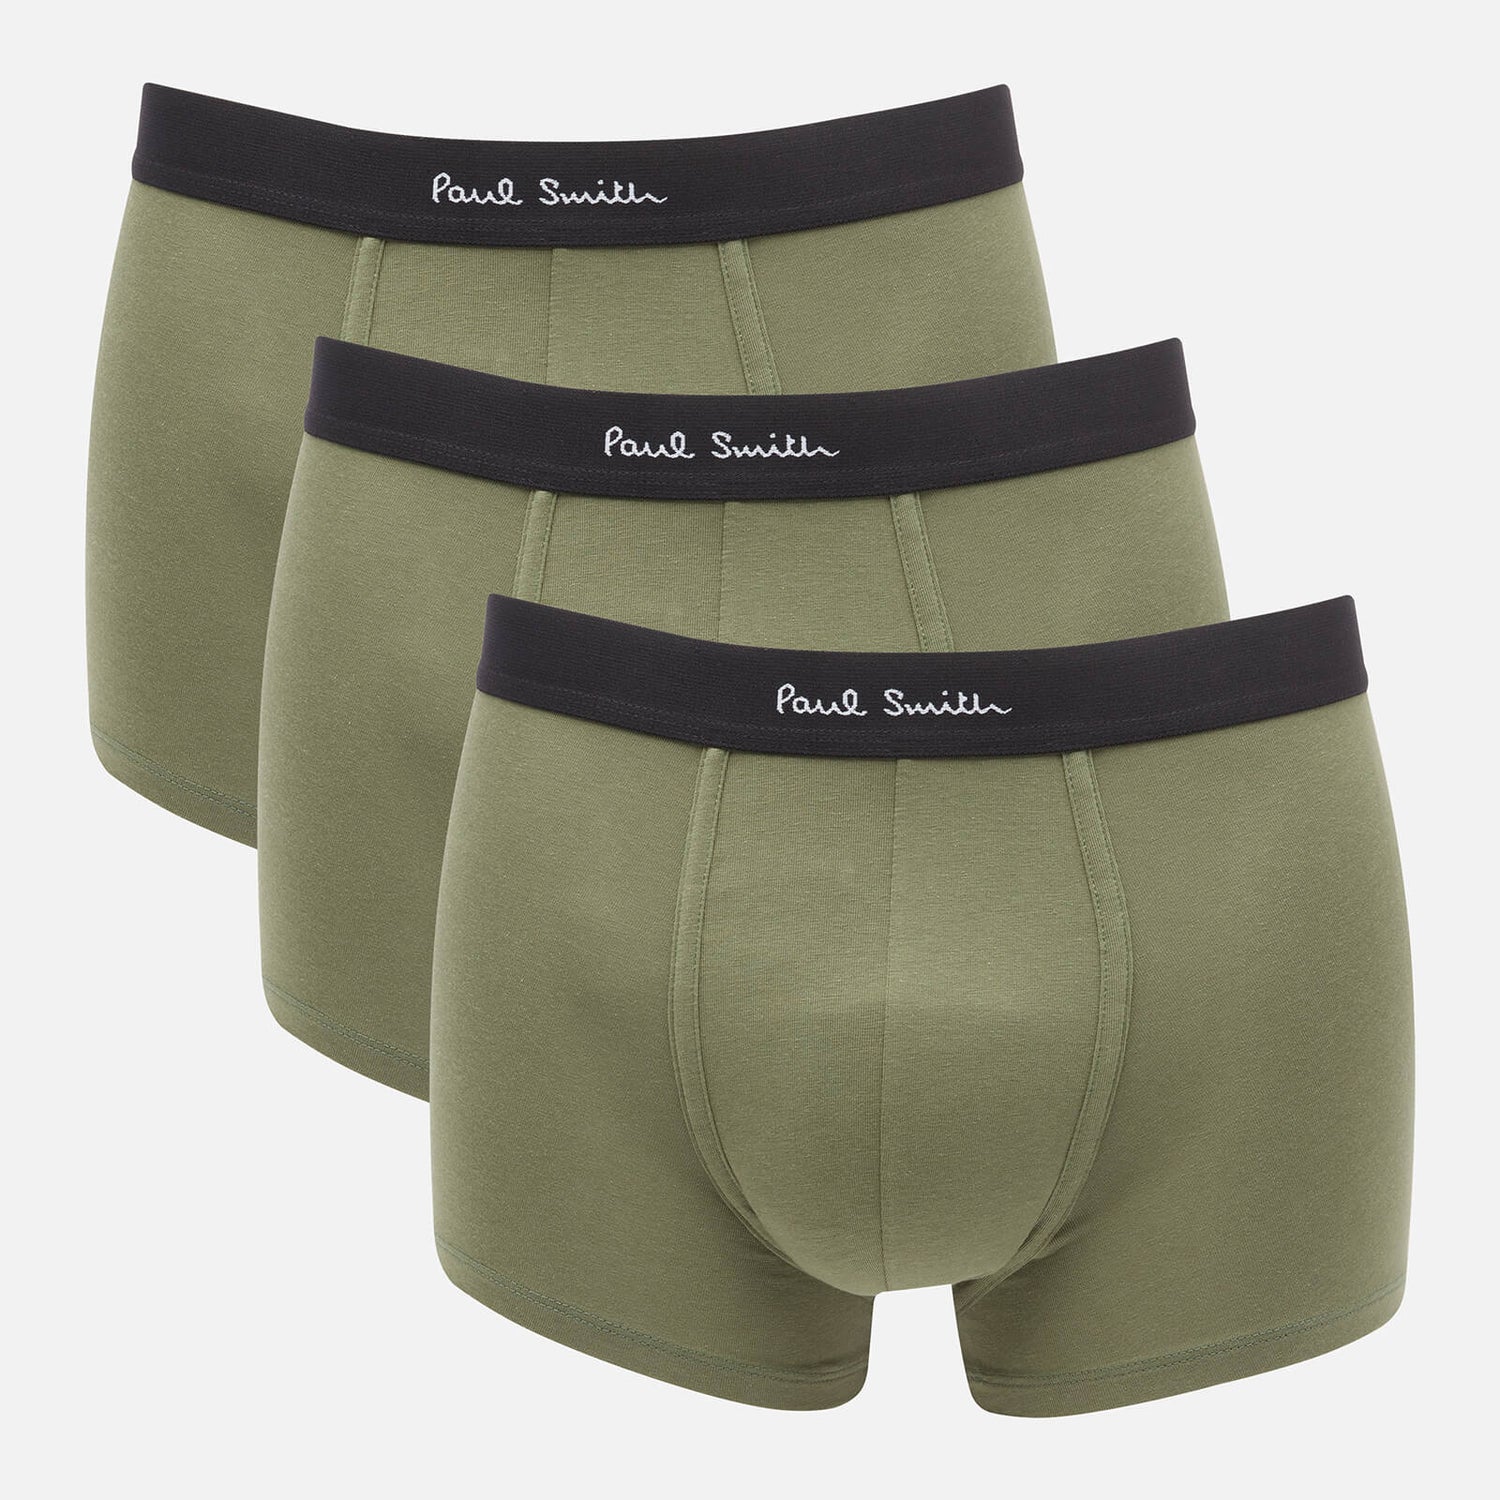 PS Paul Smith Men's 3-Pack Trunks - Khaki